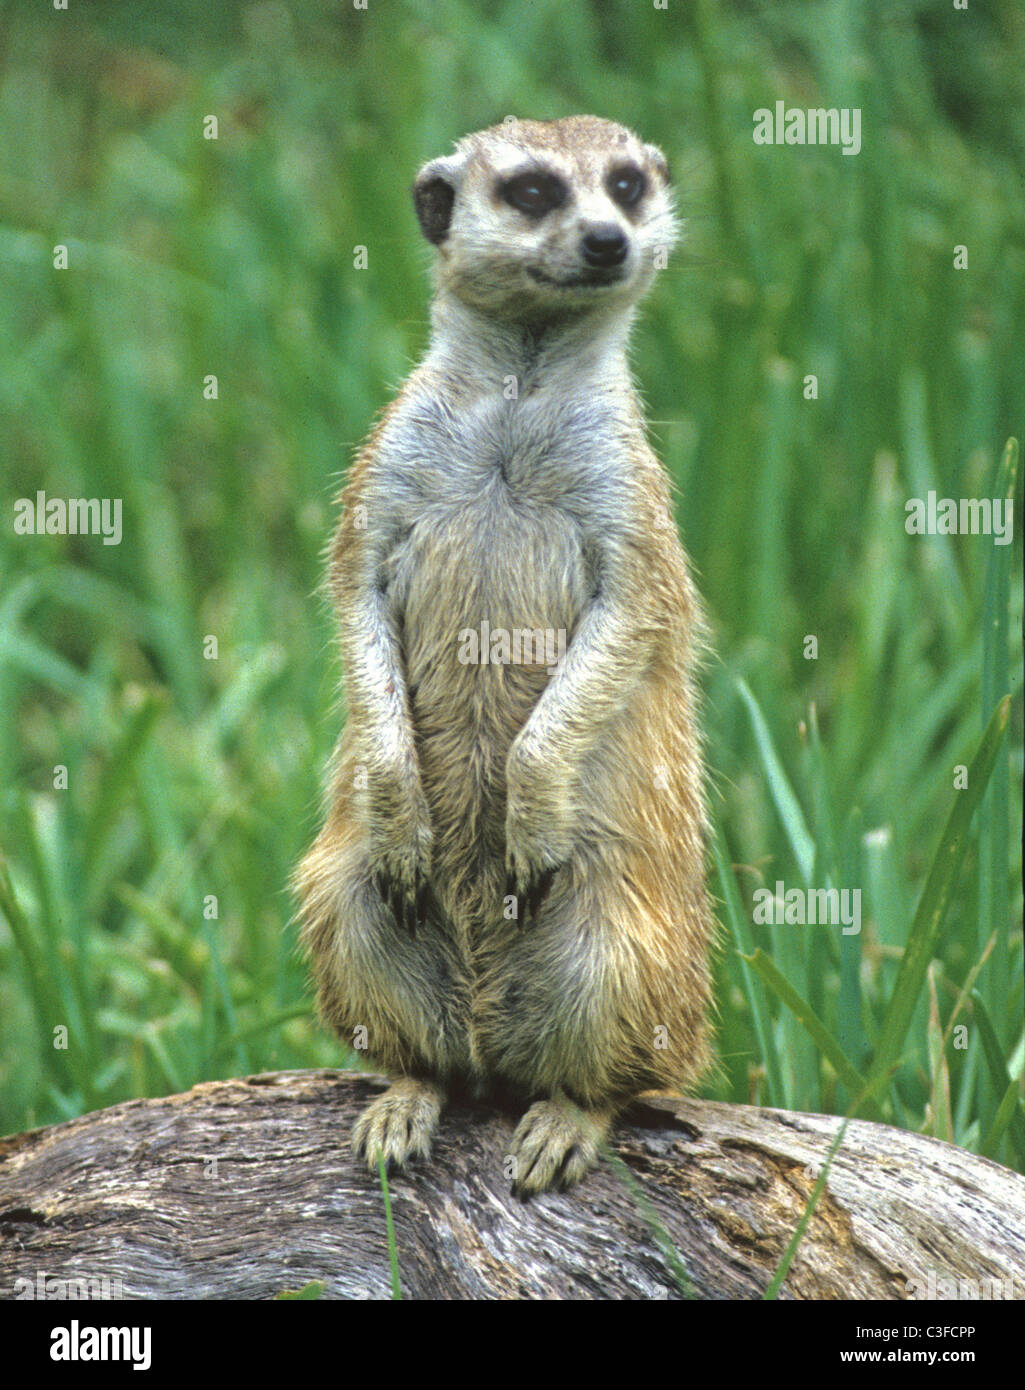 Le meerkat ou suricate Suricata suricatta, un petit mammifère, est un membre de la famille des mangoustes. Banque D'Images